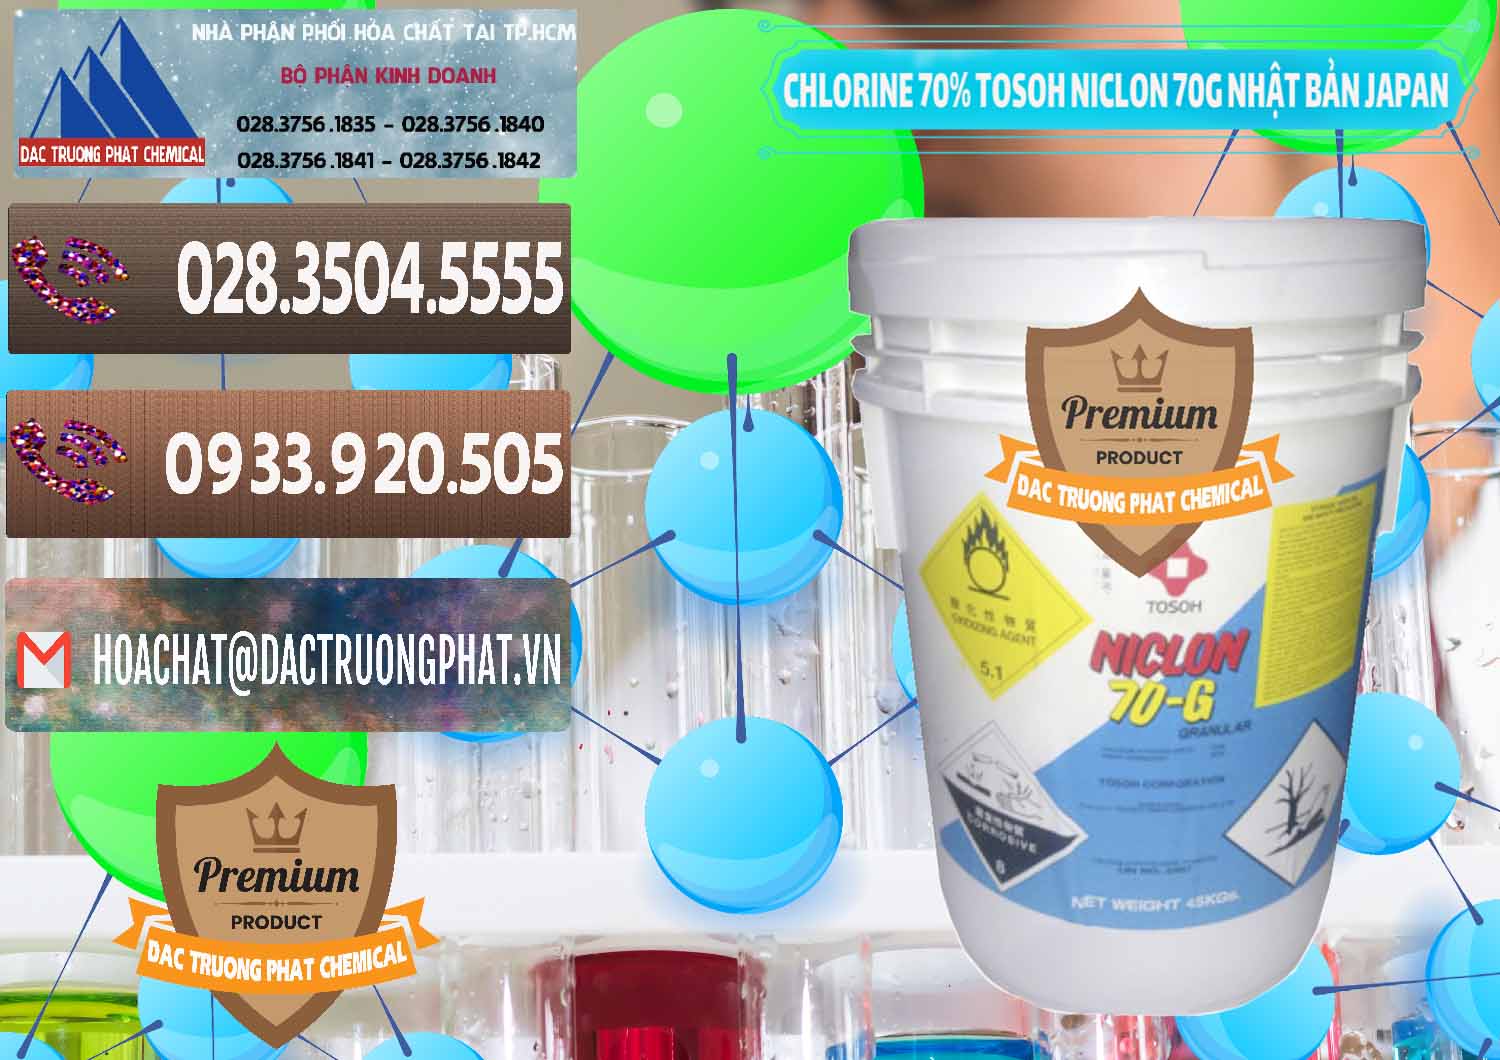 Nơi chuyên bán ( cung ứng ) Clorin – Chlorine 70% Tosoh Niclon 70G Nhật Bản Japan - 0242 - Cty cung cấp _ phân phối hóa chất tại TP.HCM - hoachatviet.net